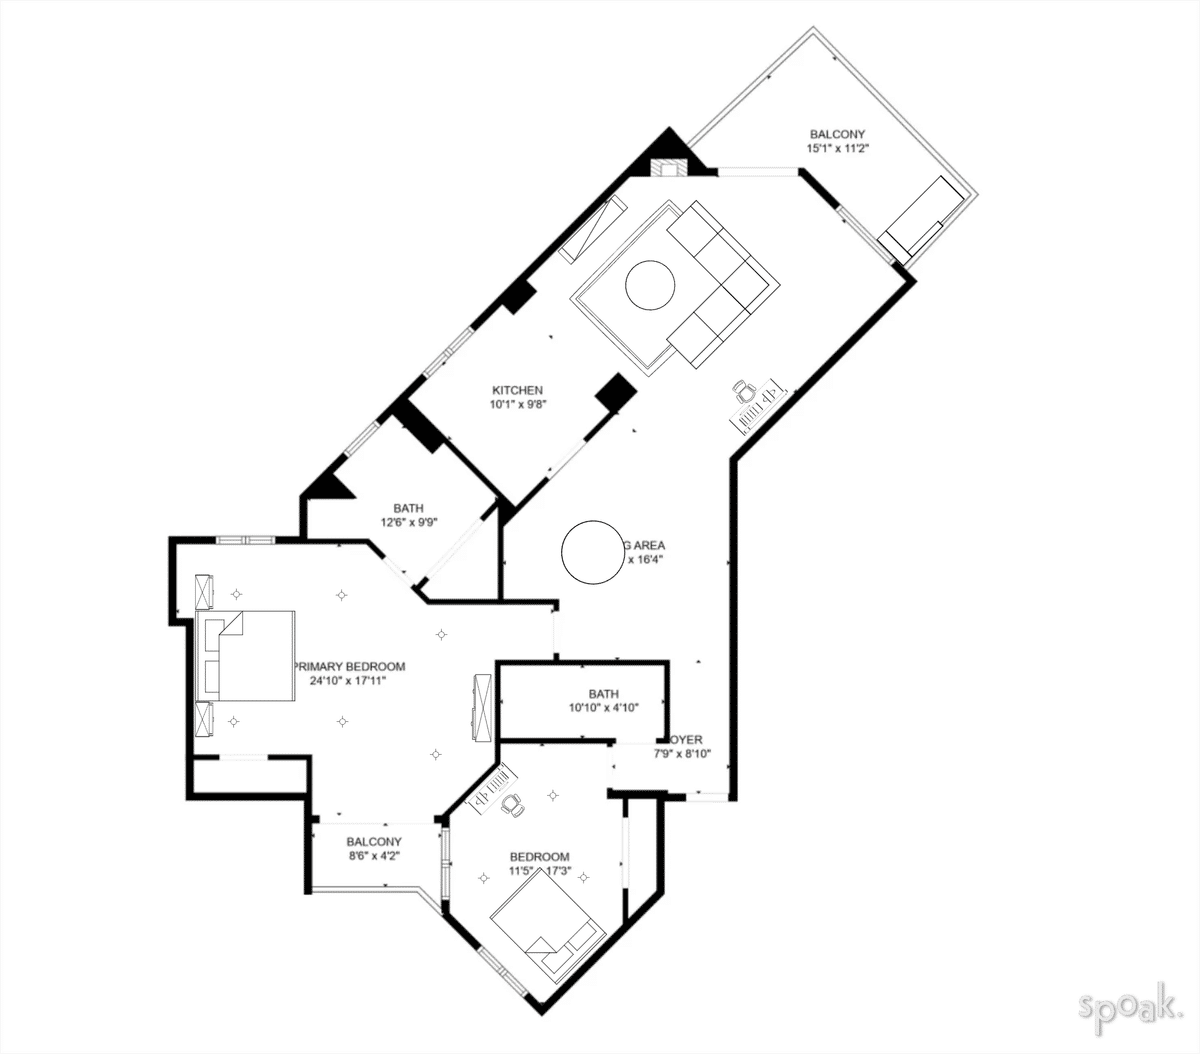 Studio Apartment Floor Plan designed by Julia Quayle